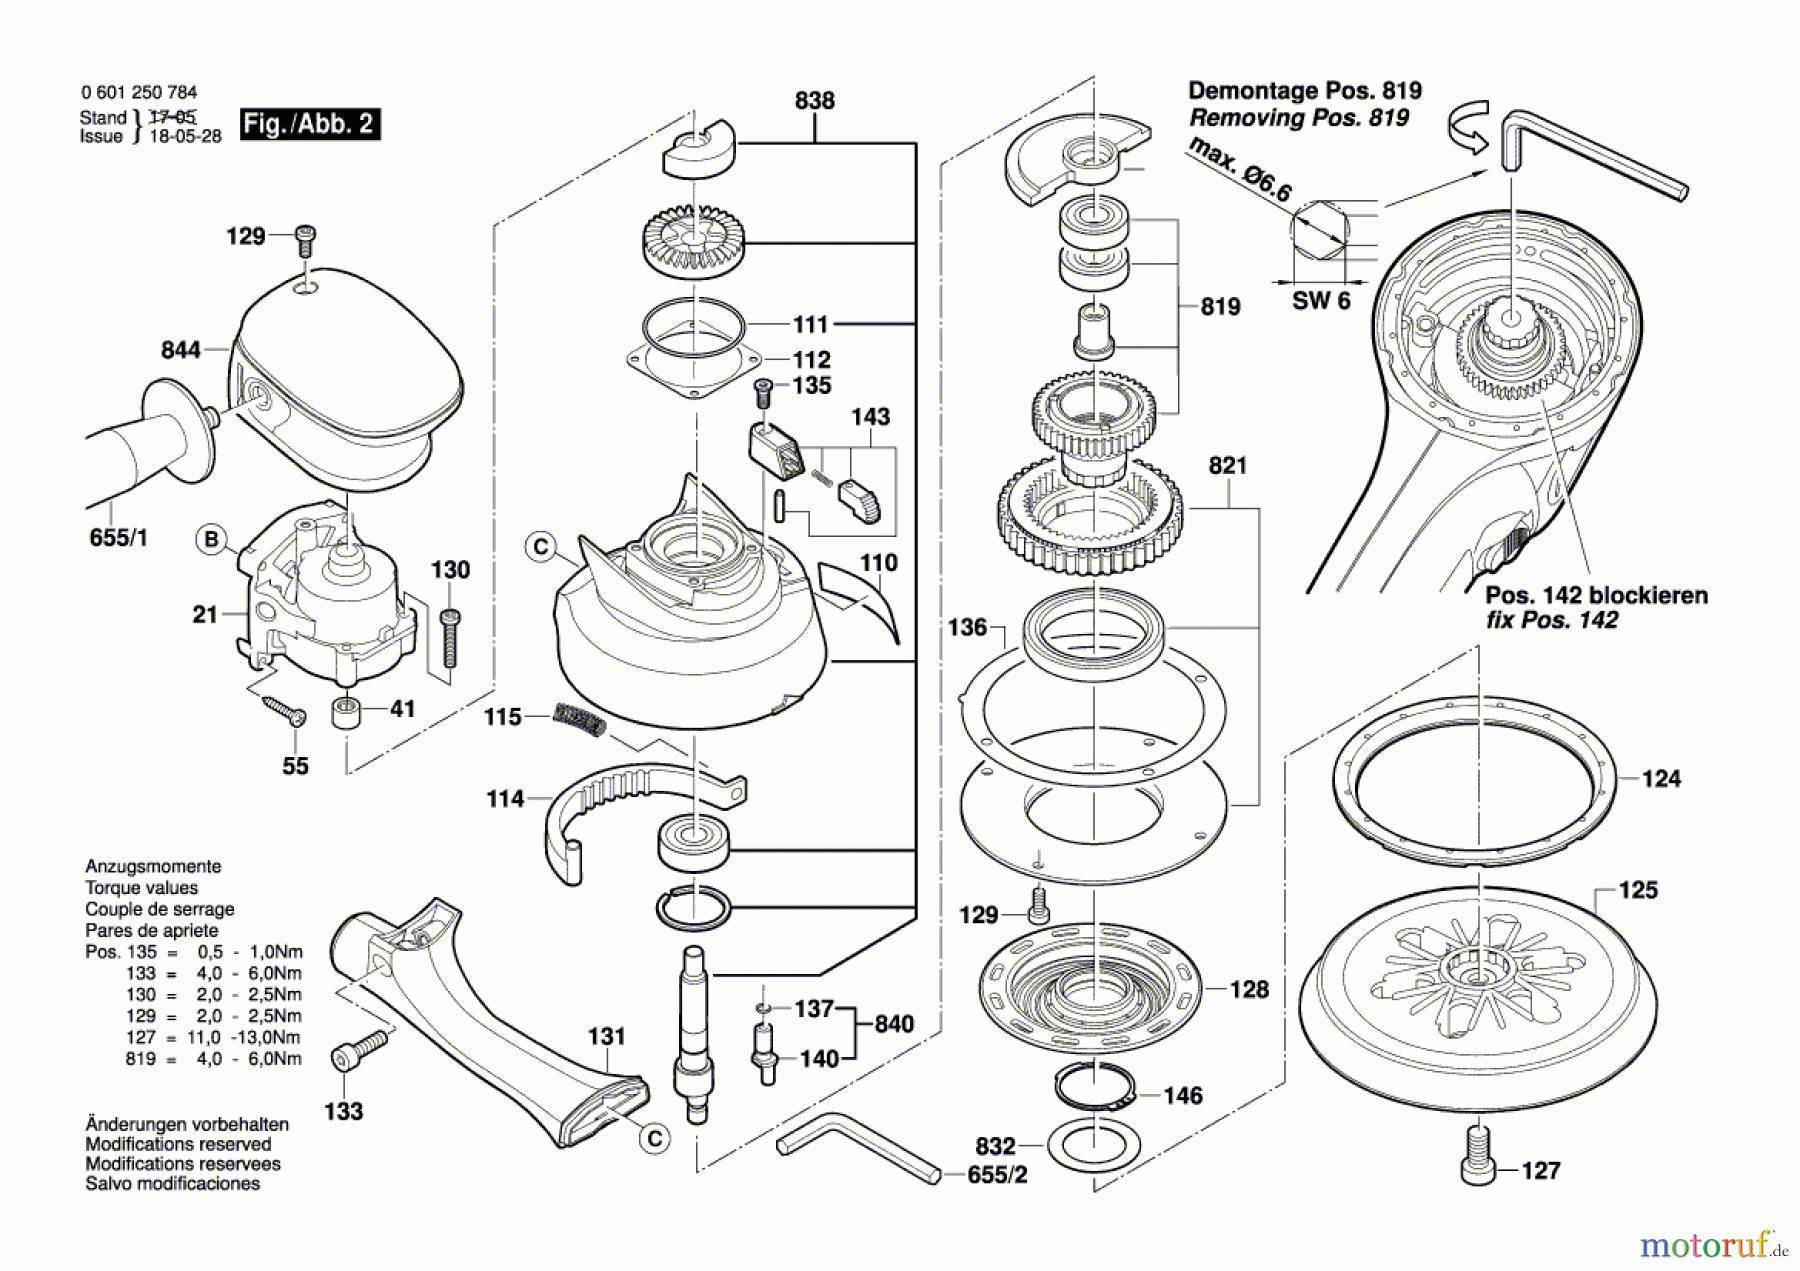  Bosch Werkzeug Exzenterschleifer BROS-150 T Seite 2